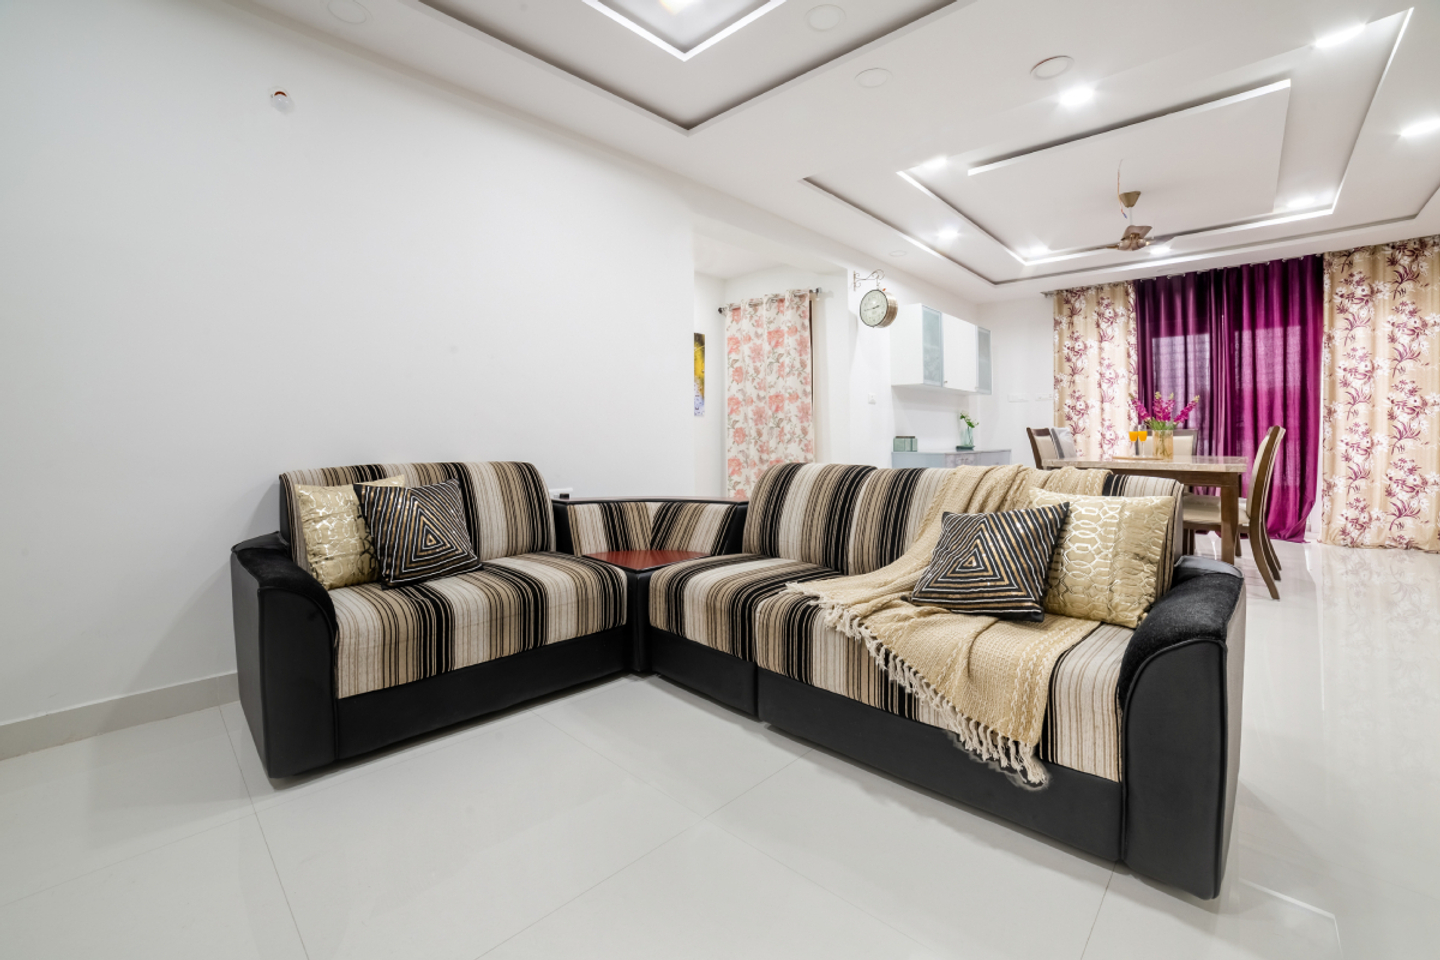 Contemporary Living Room Design With A Concentric False Ceiling